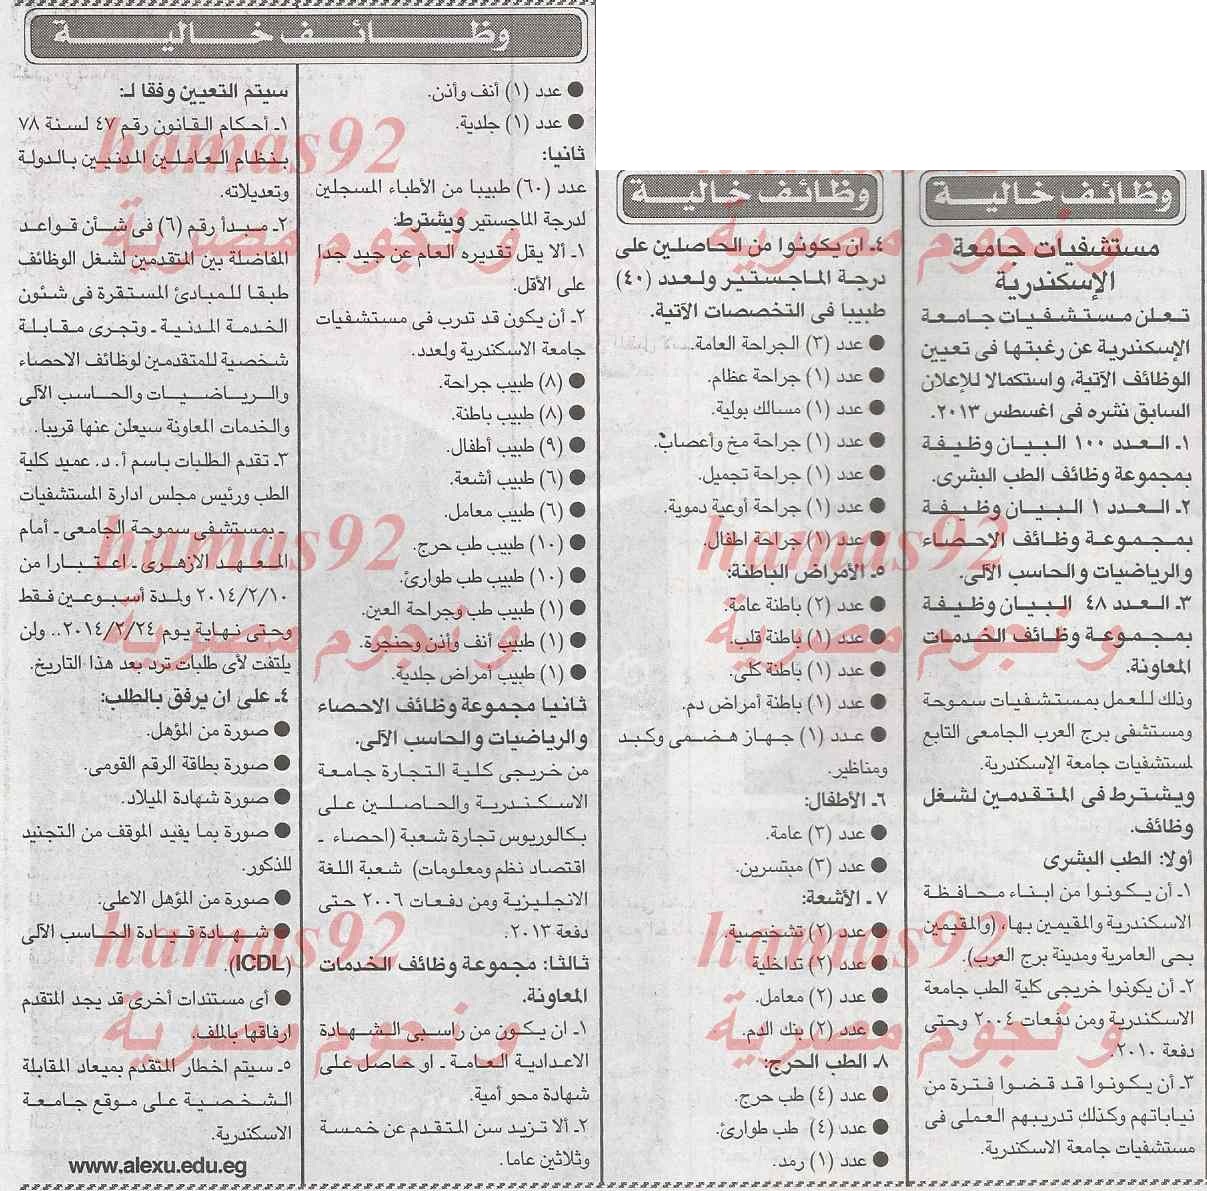 وظائف جريدة الجمهورية اليوم الخميس 6-2-2014 , وظائف خالية اليوم 6 فبراير 2014